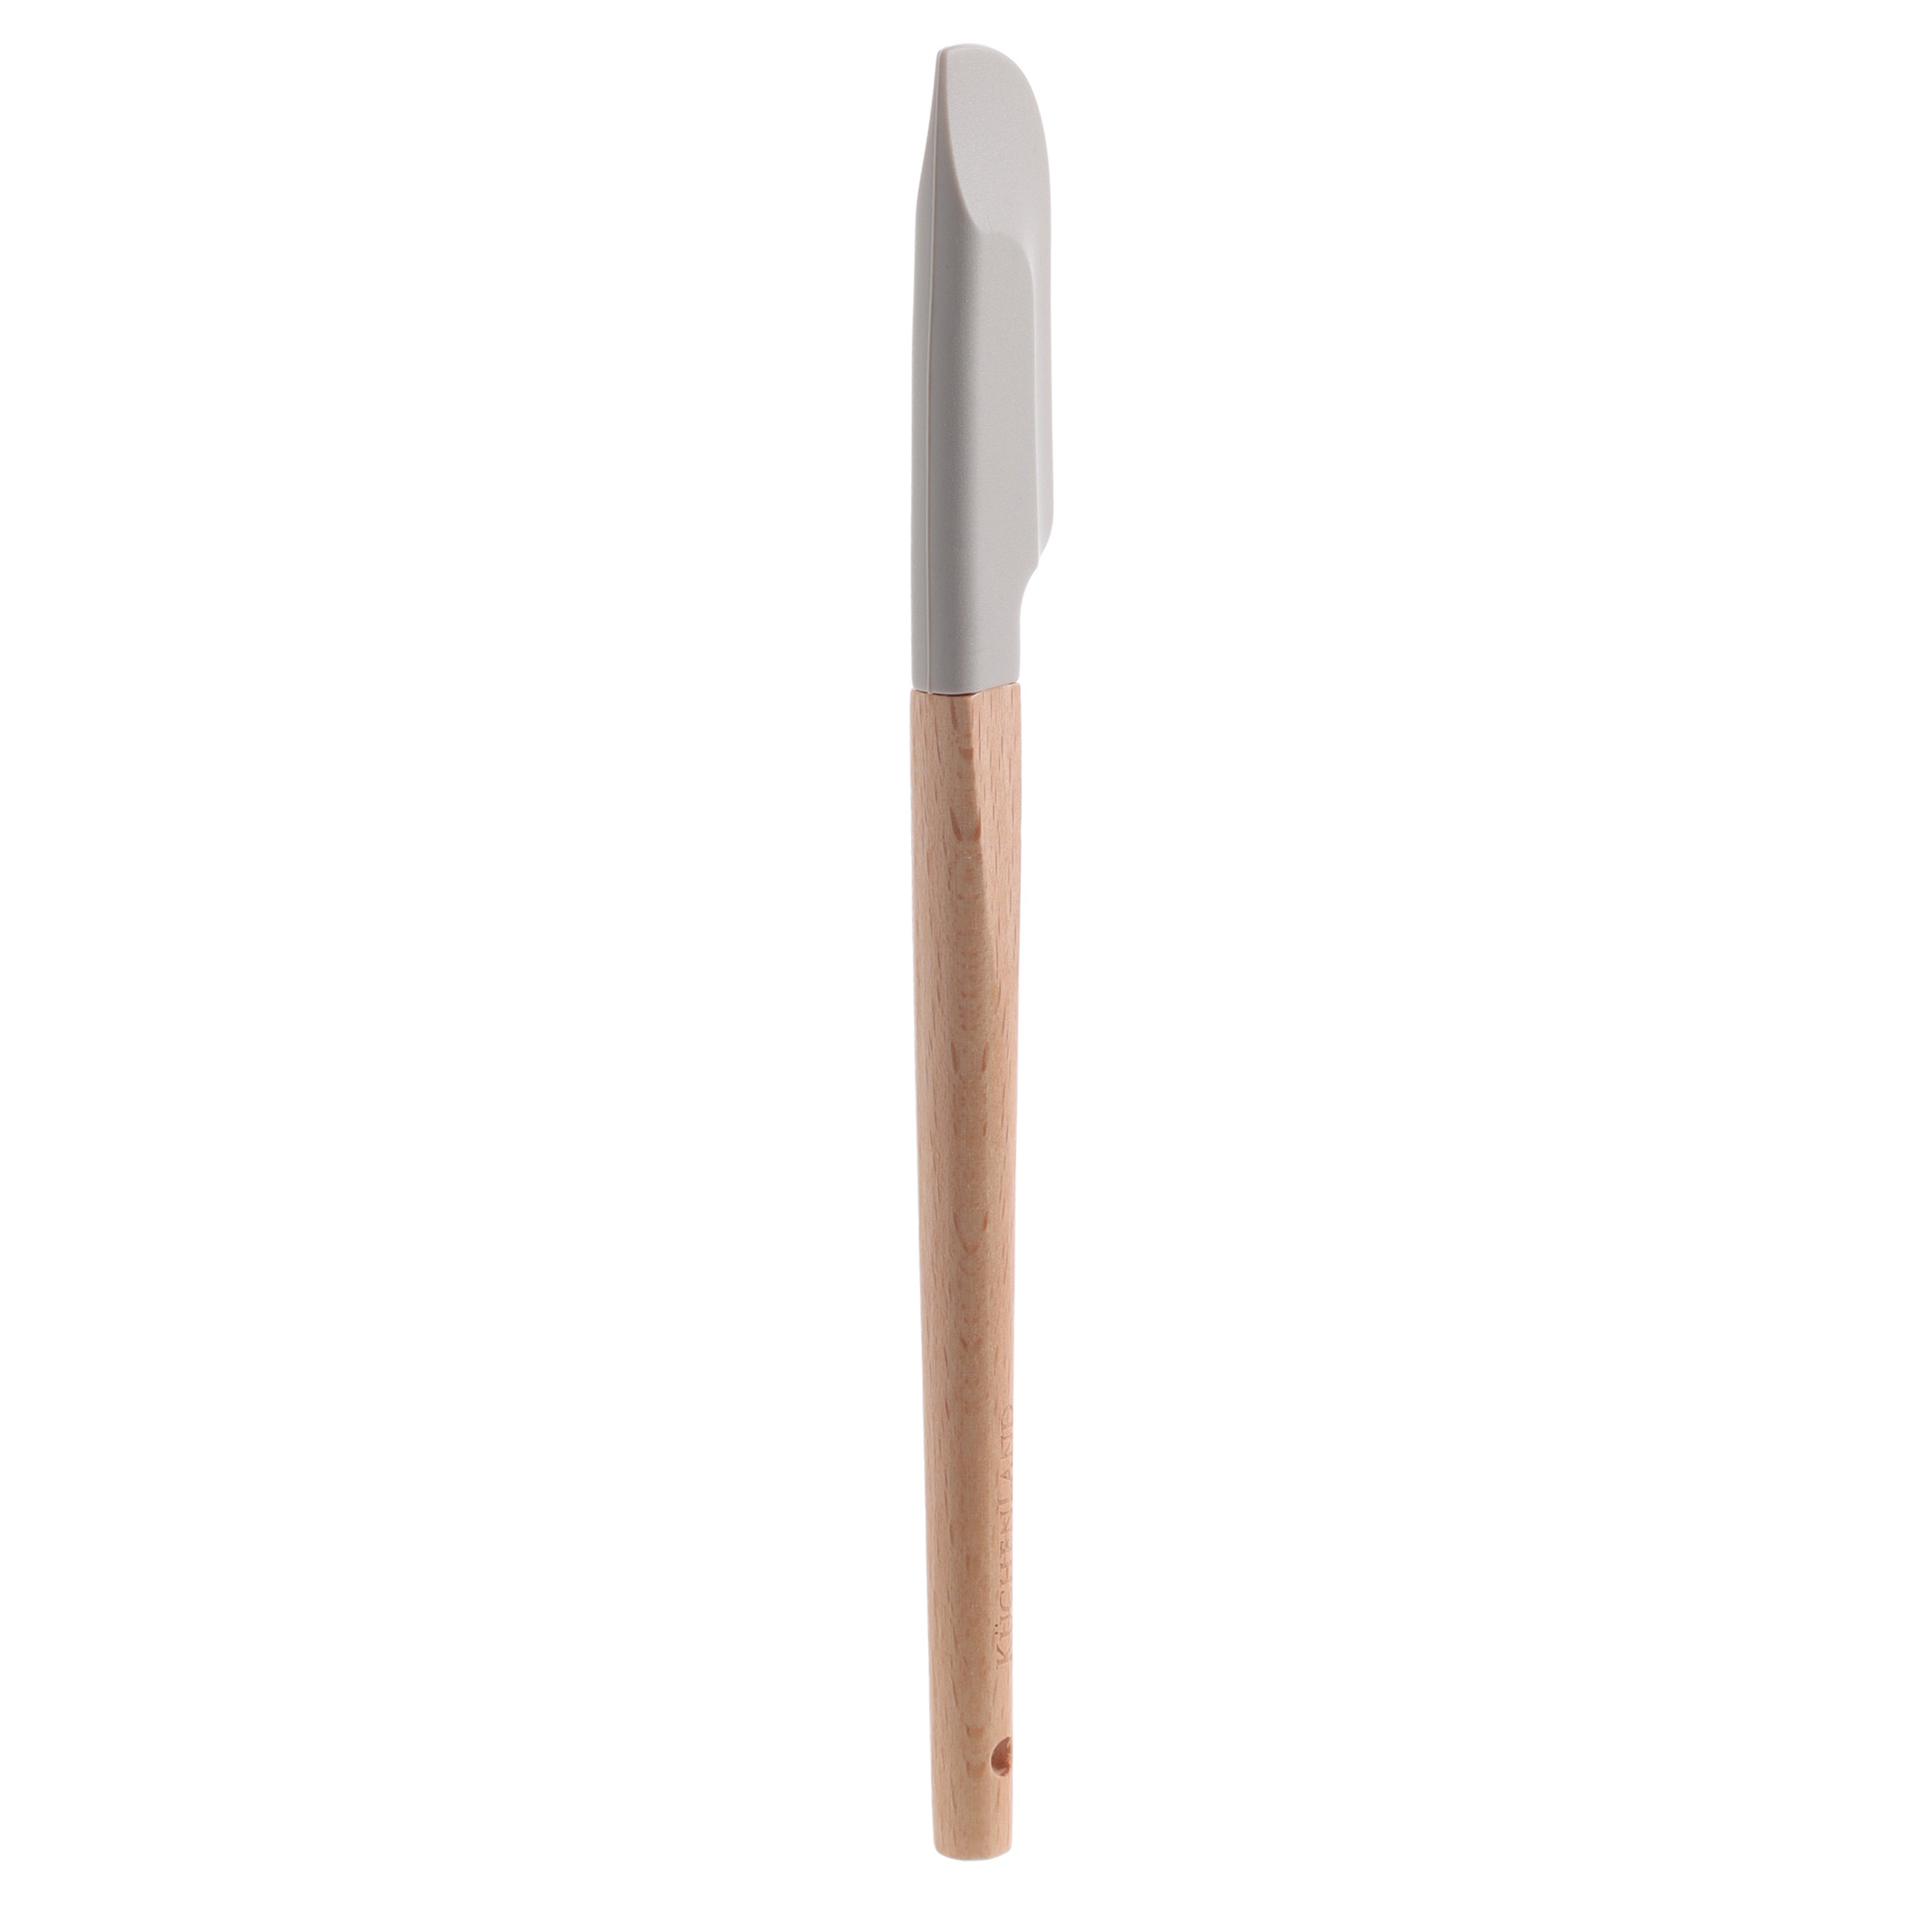 Лопатка-шпатель, 22 см, силикон/дерево, серо-коричневая, Bakery wood изображение № 2